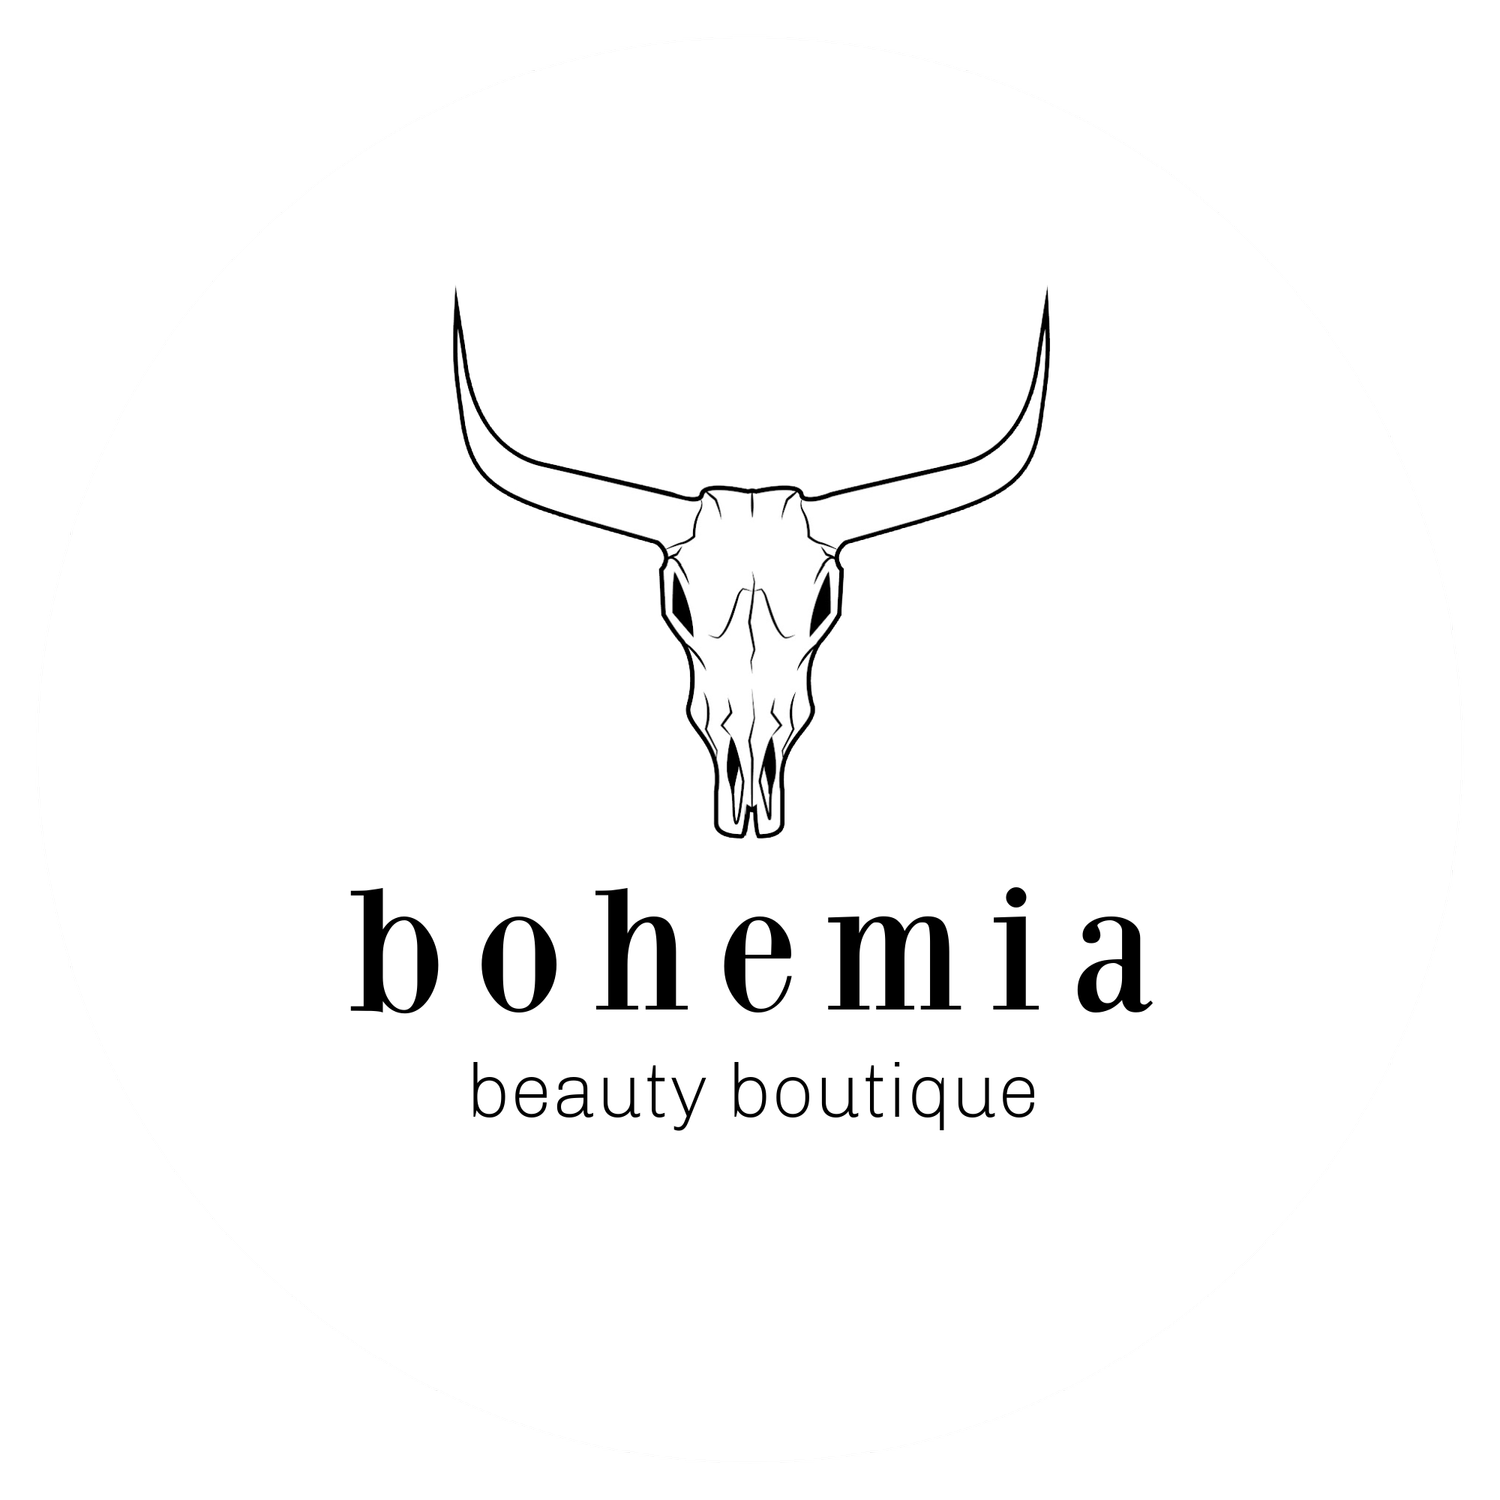 bohemia beauty boutique